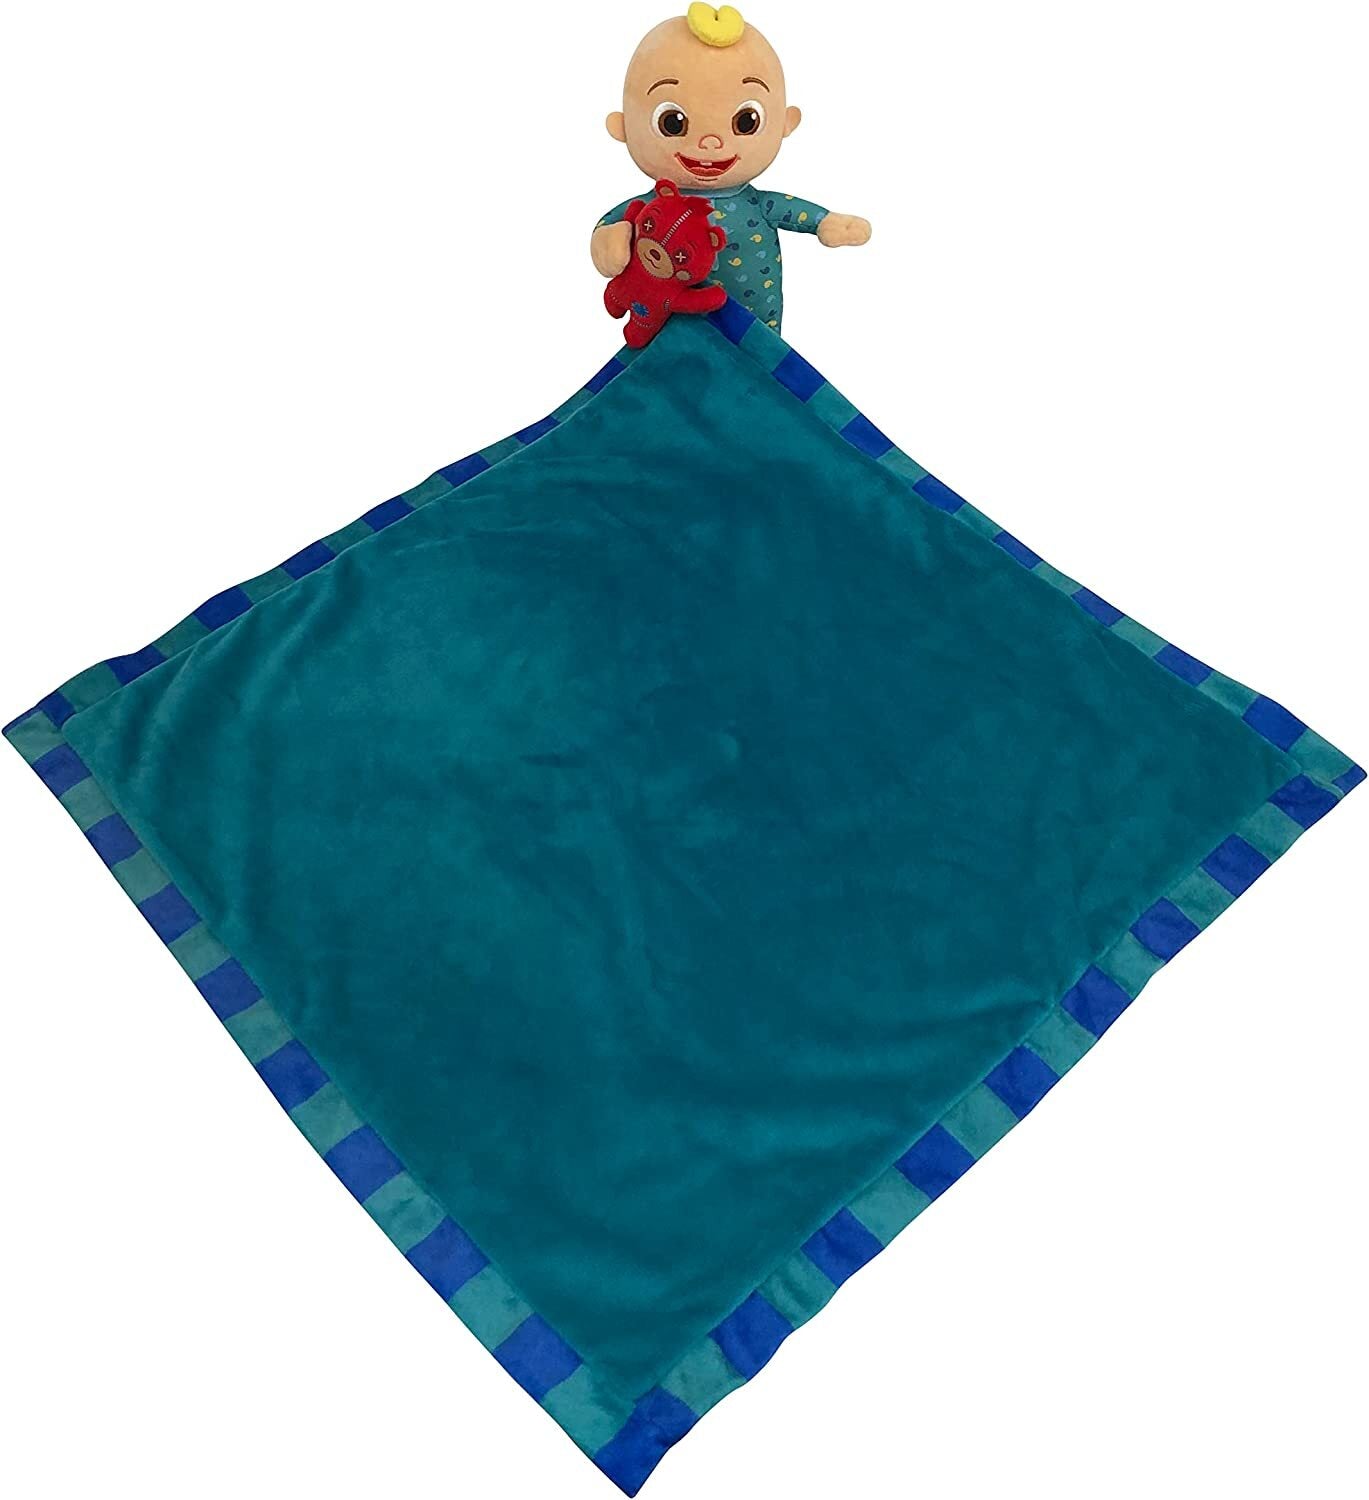 Plush Blanket Comforter Kids Children w/ Toy - Blue (51x51cm)